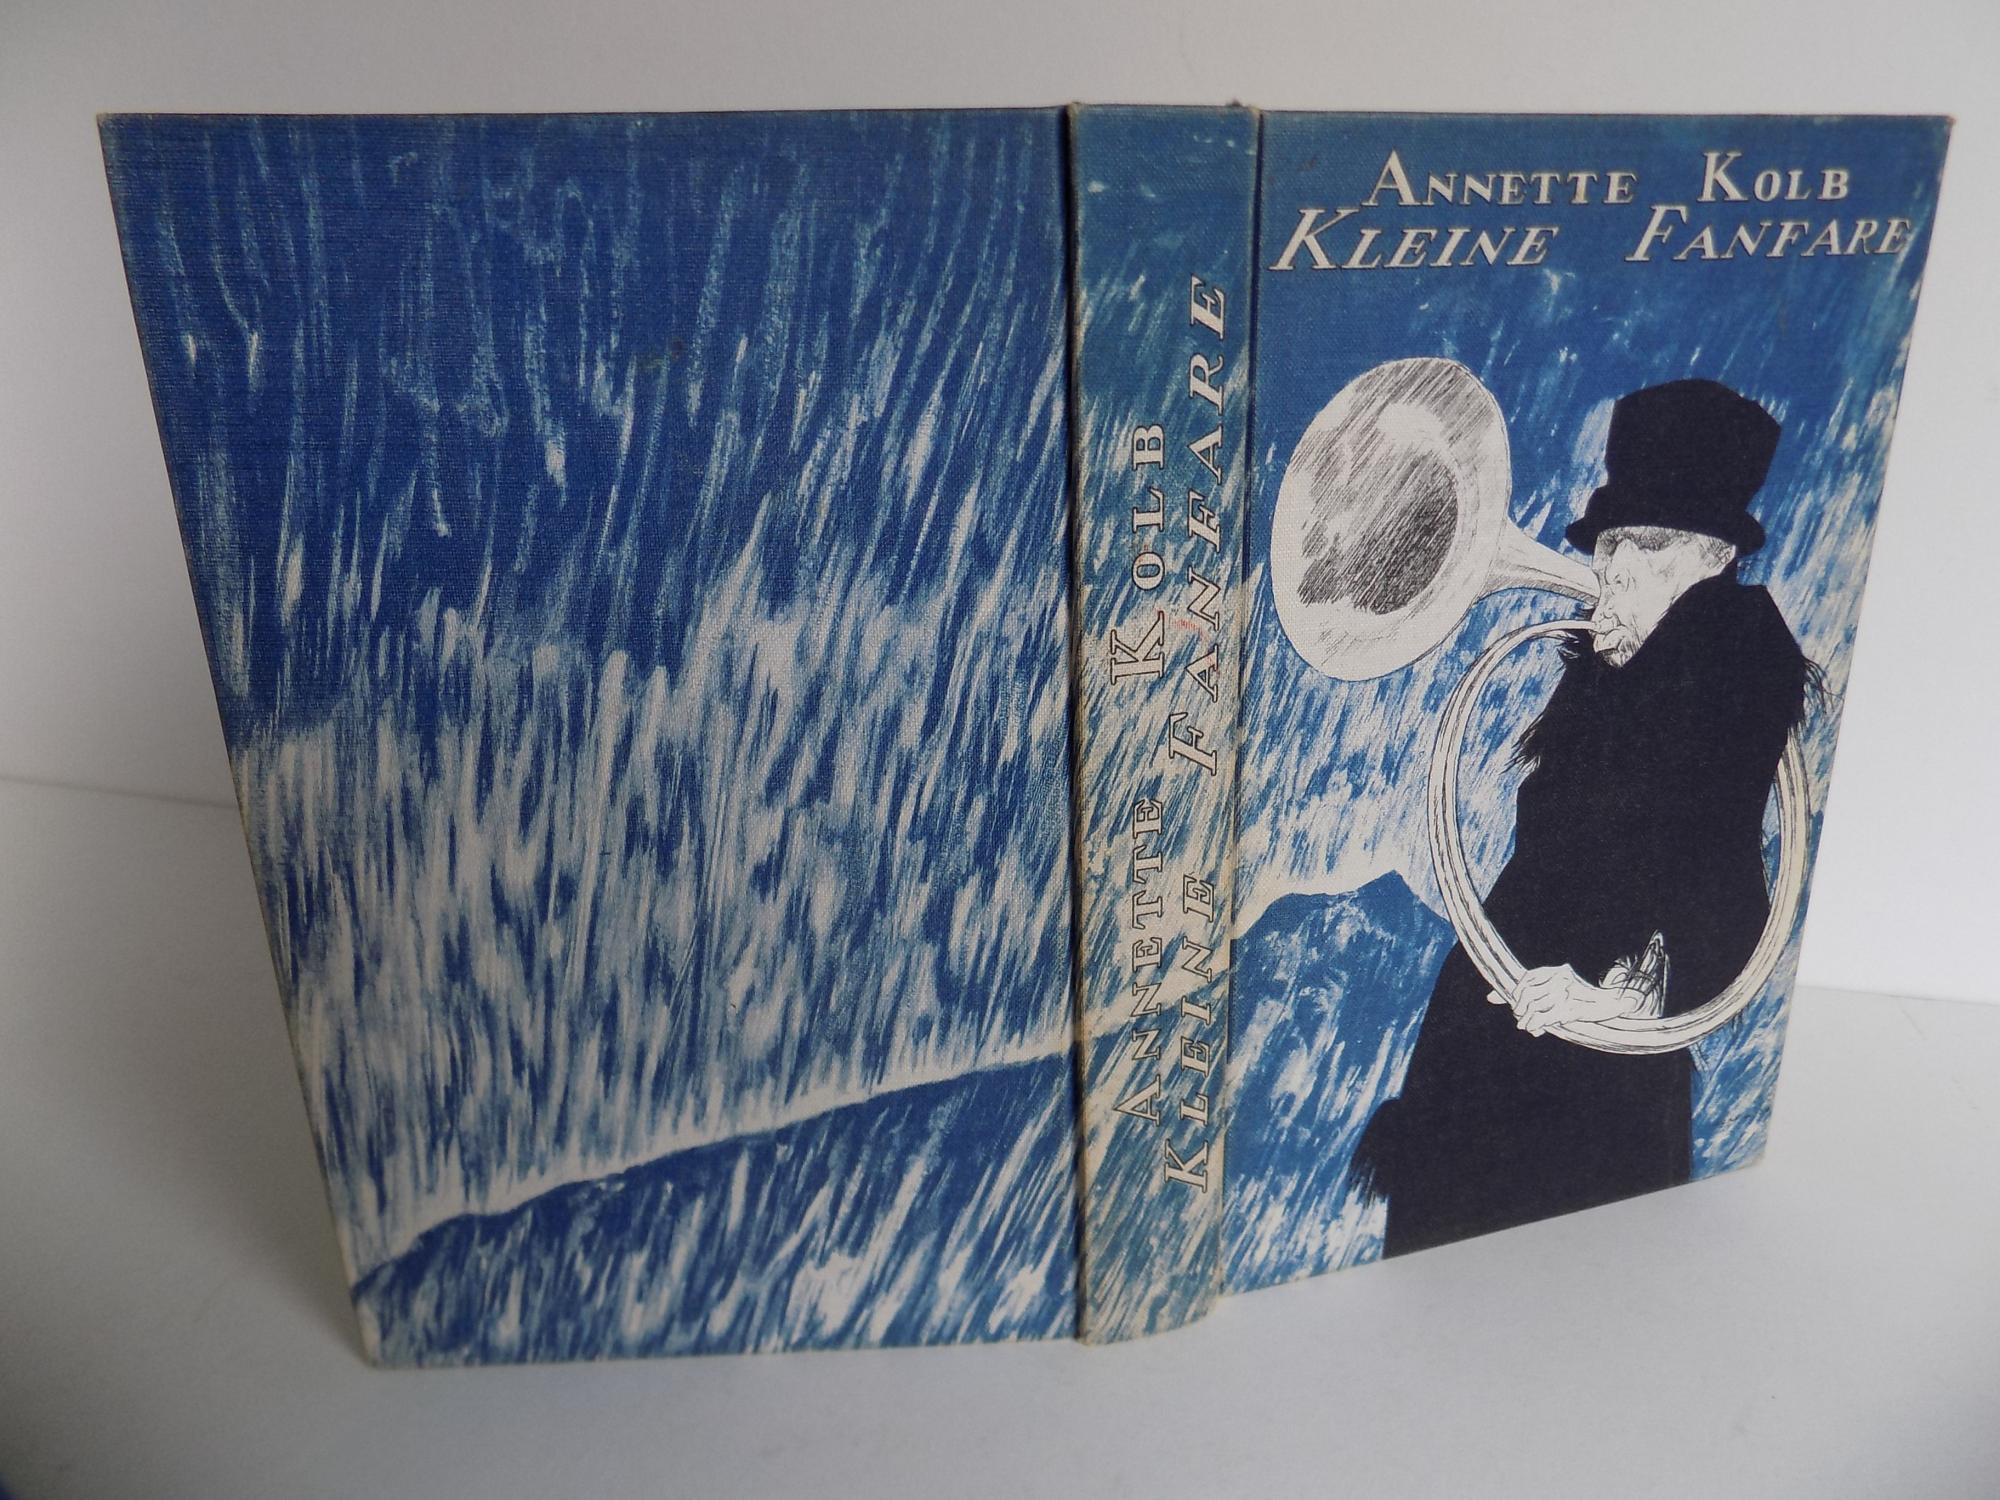 Kleine Fanfare. by Kolb, Annette (signiert; mit beiliegendem Autograph):  Gut Hardcover (1930) Erste Ausgabe., Widmung des Verfassers